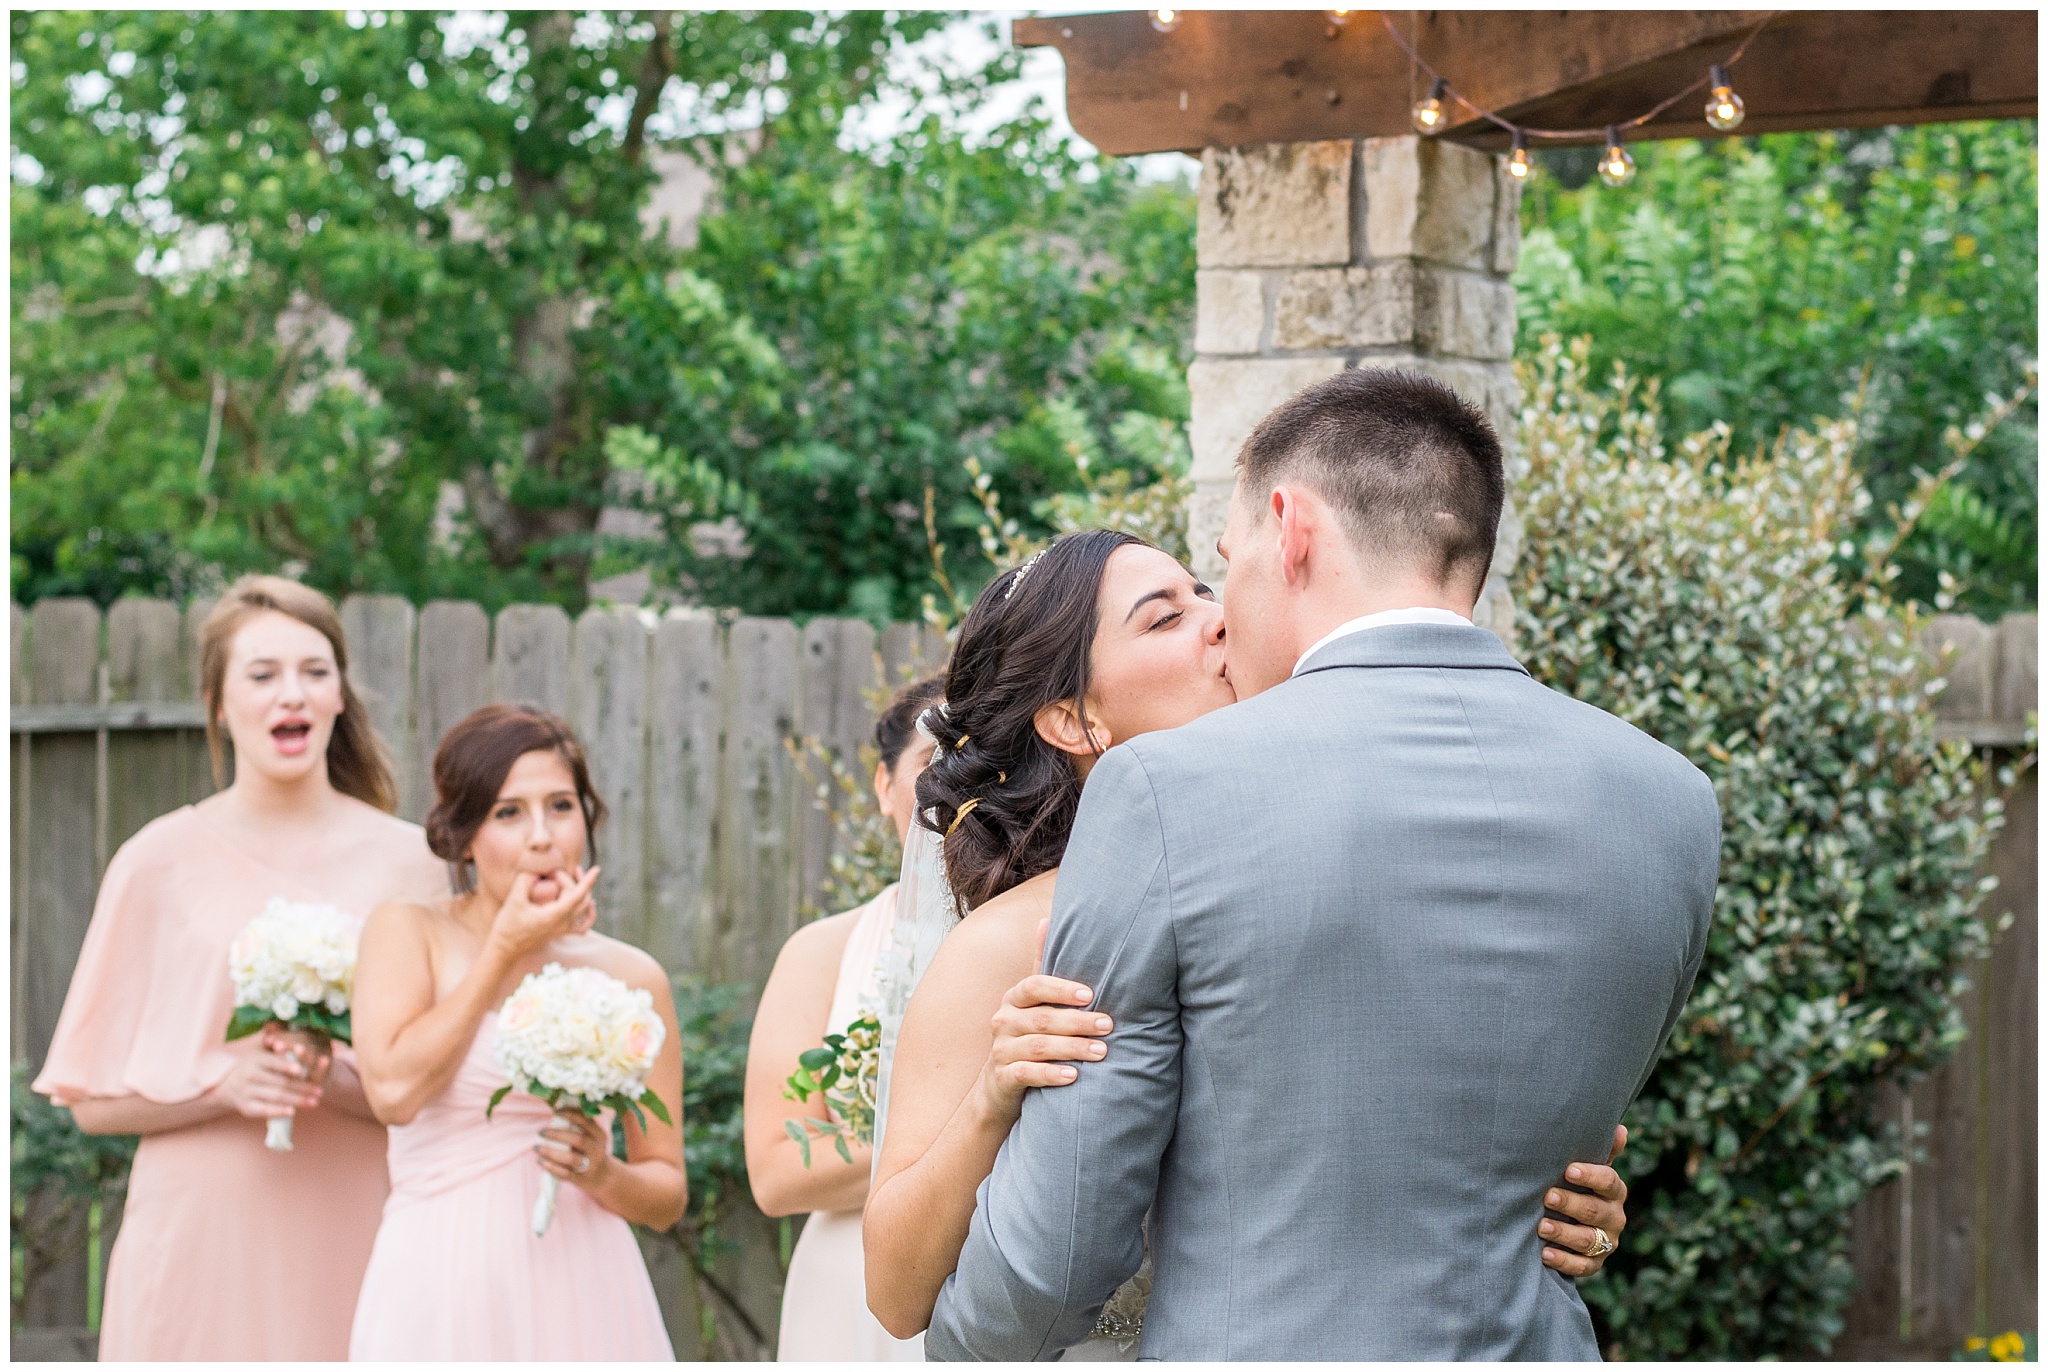 Joyful and Intimate Backyard Wedding Cypress Texas-2017-06-14_0020